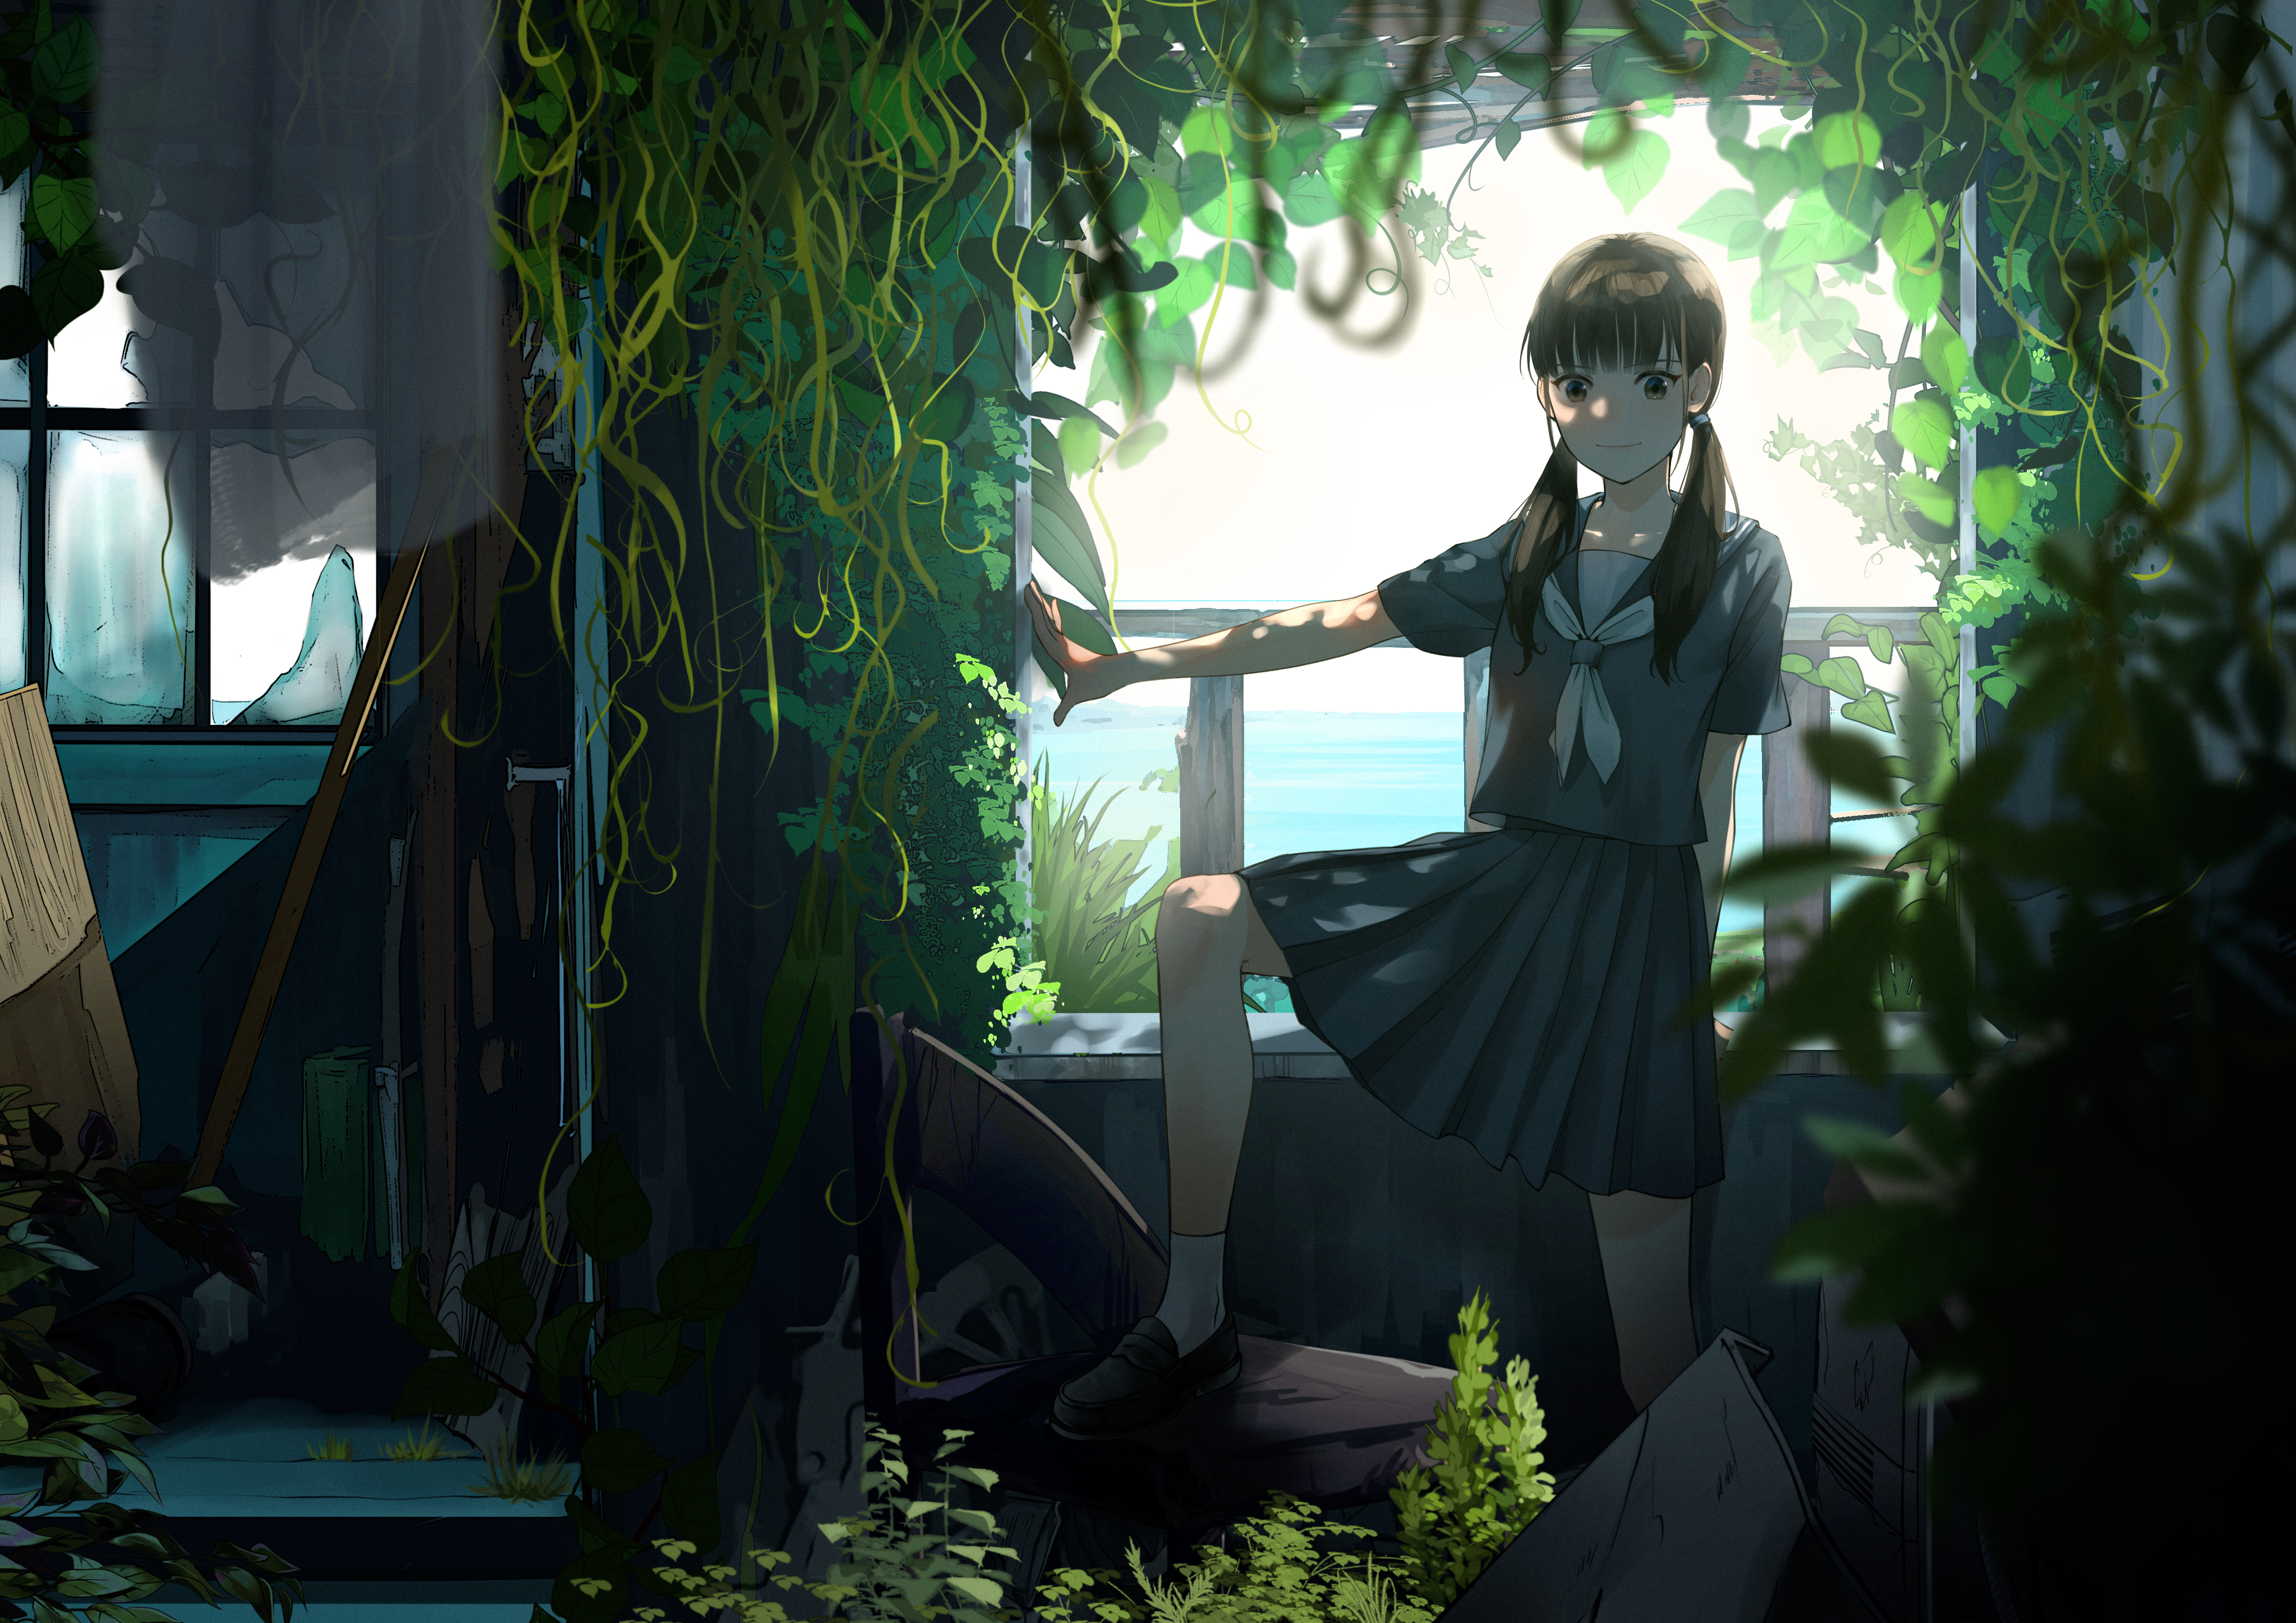 HD wallpaper: Anime, Aesthetic, Girl